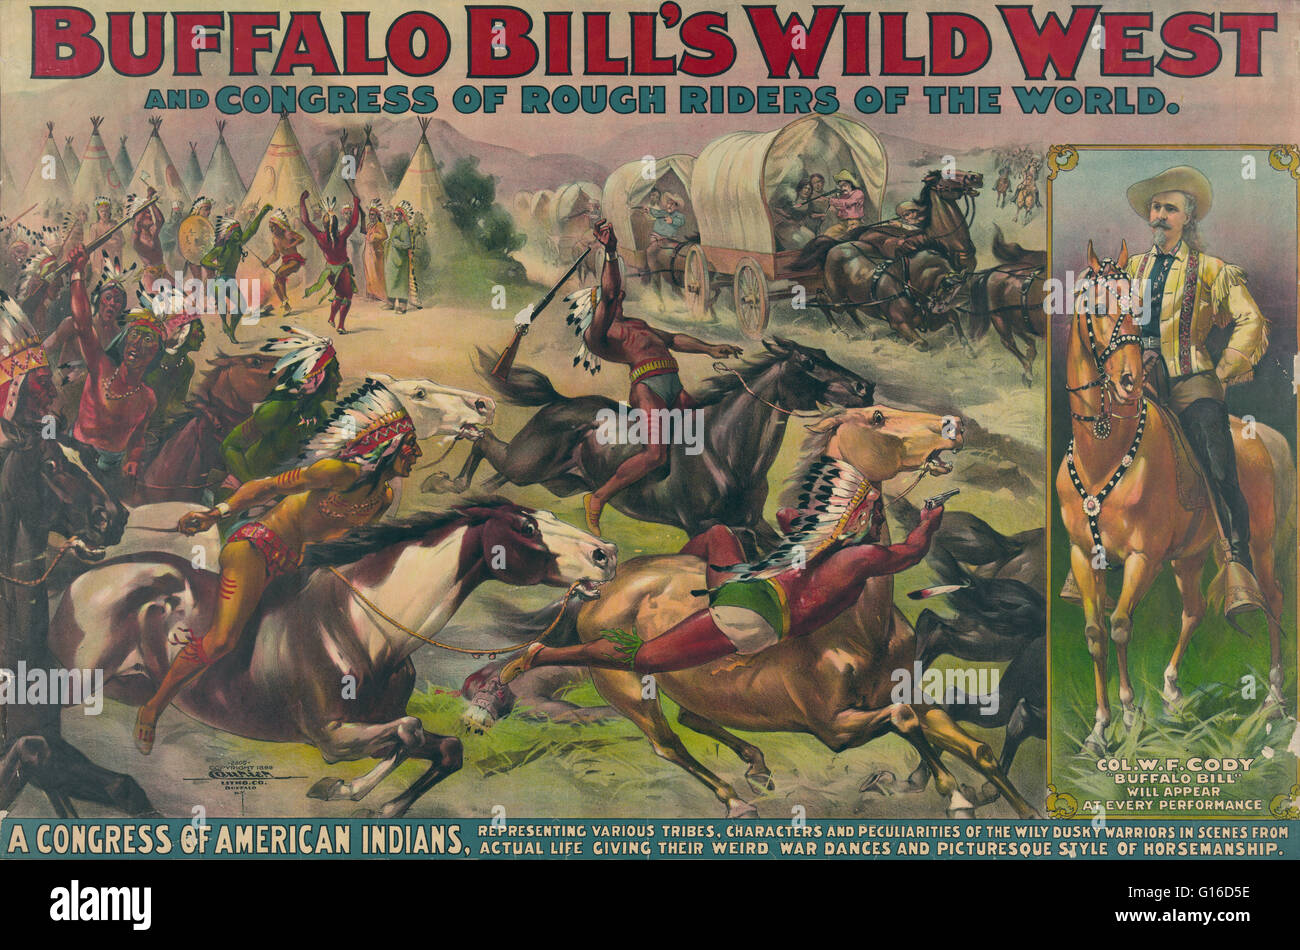 Buffalo Bill's Wild West et un congrès des Indiens américains. Circus affiche montrant les Indiens américains menant attaque contre pionniers dans des wagons couverts. Chromolithographie par la compagnie Currier, 1899 Lithographie. Comprend portrait de Buffalo Bill à cheval Banque D'Images